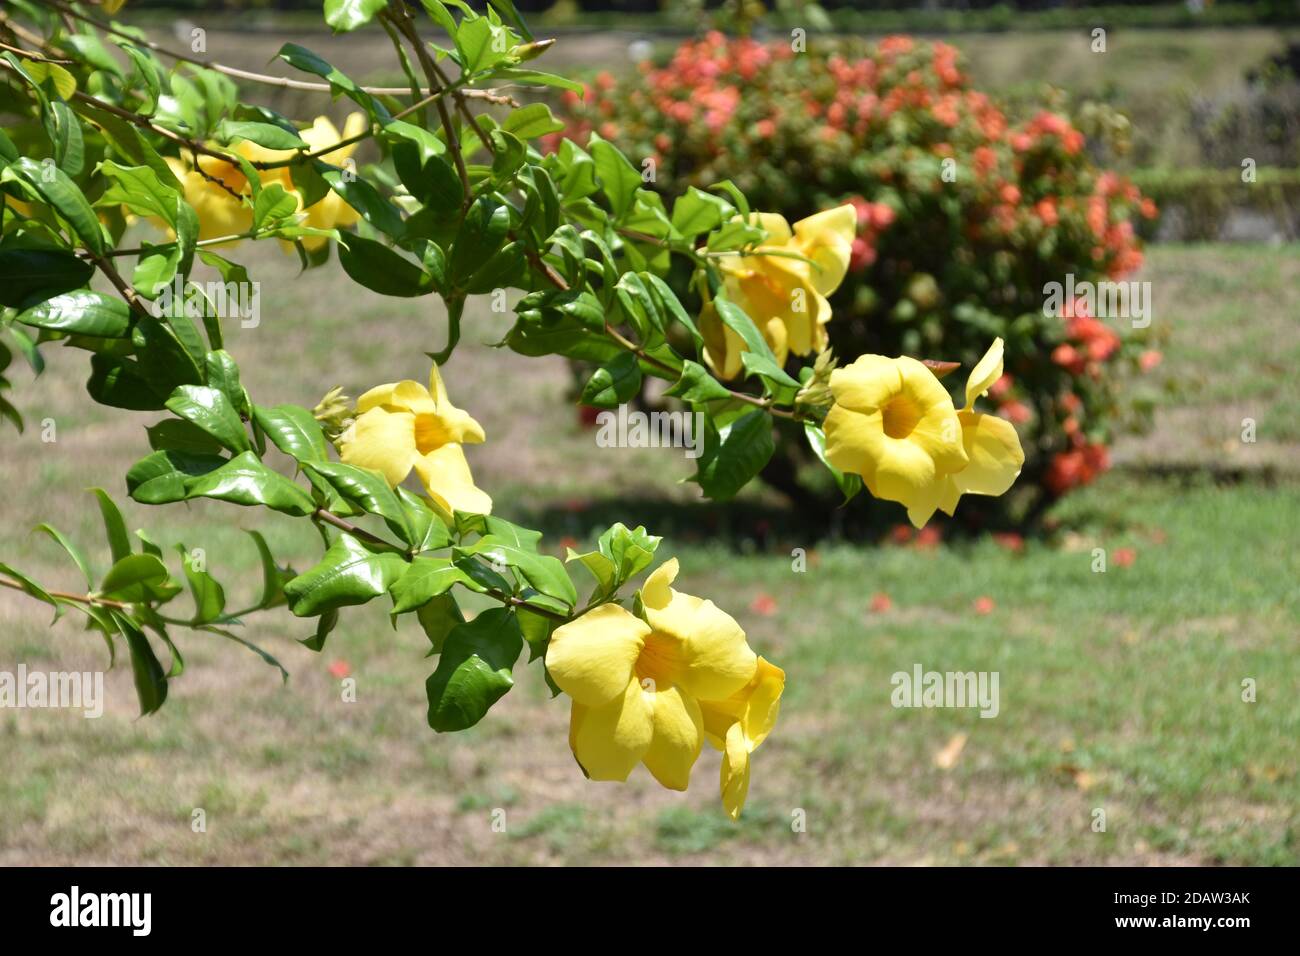 beautiful yellow allamanda flowers Stock Photo